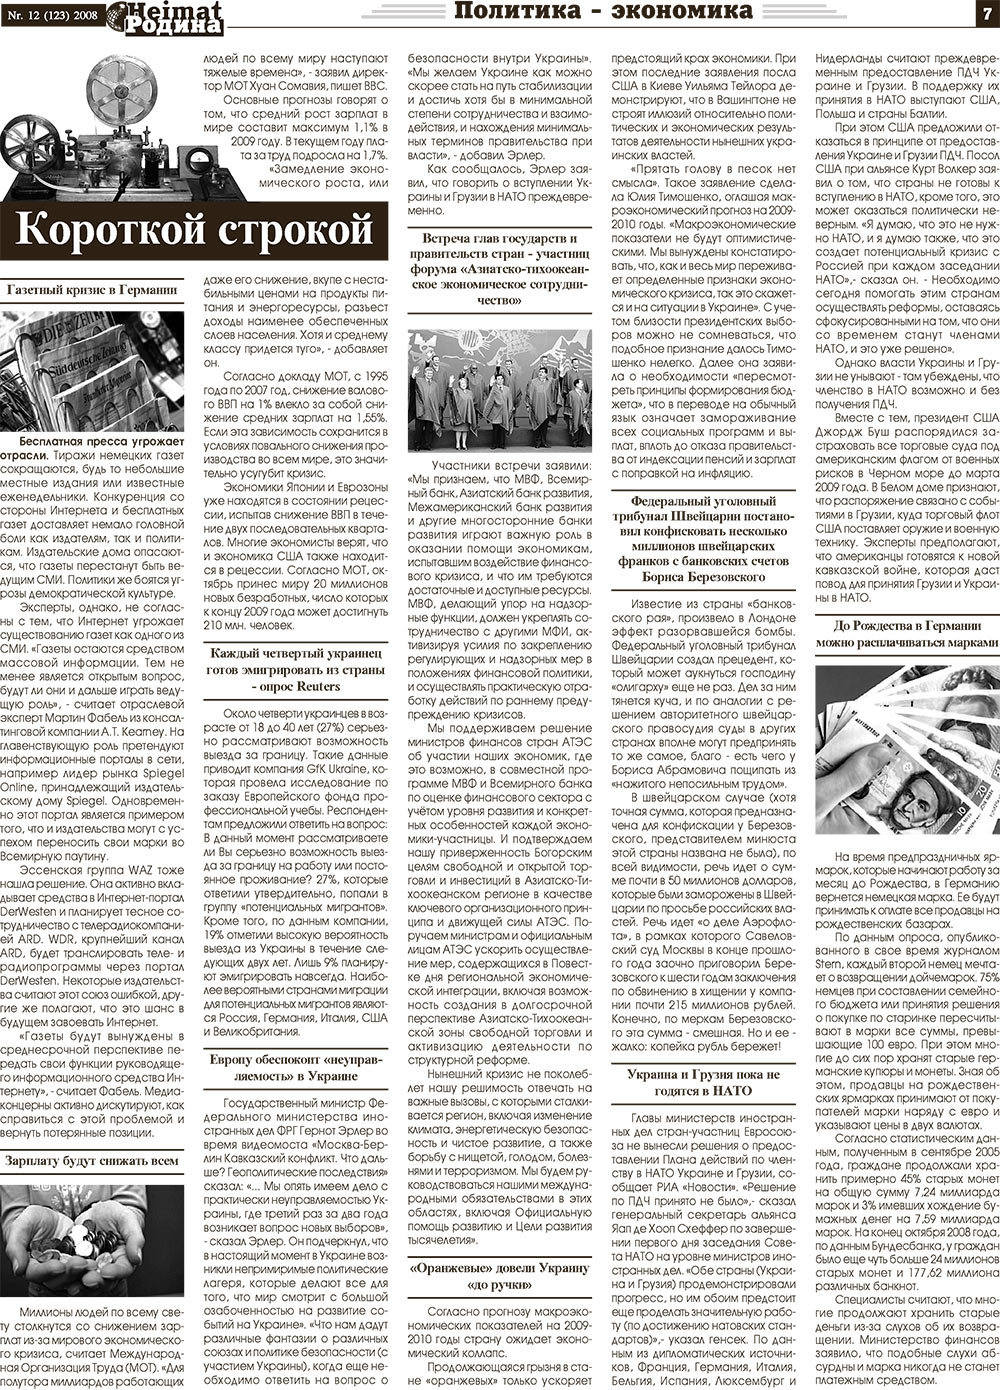 Heimat-Родина (газета). 2008 год, номер 12, стр. 7